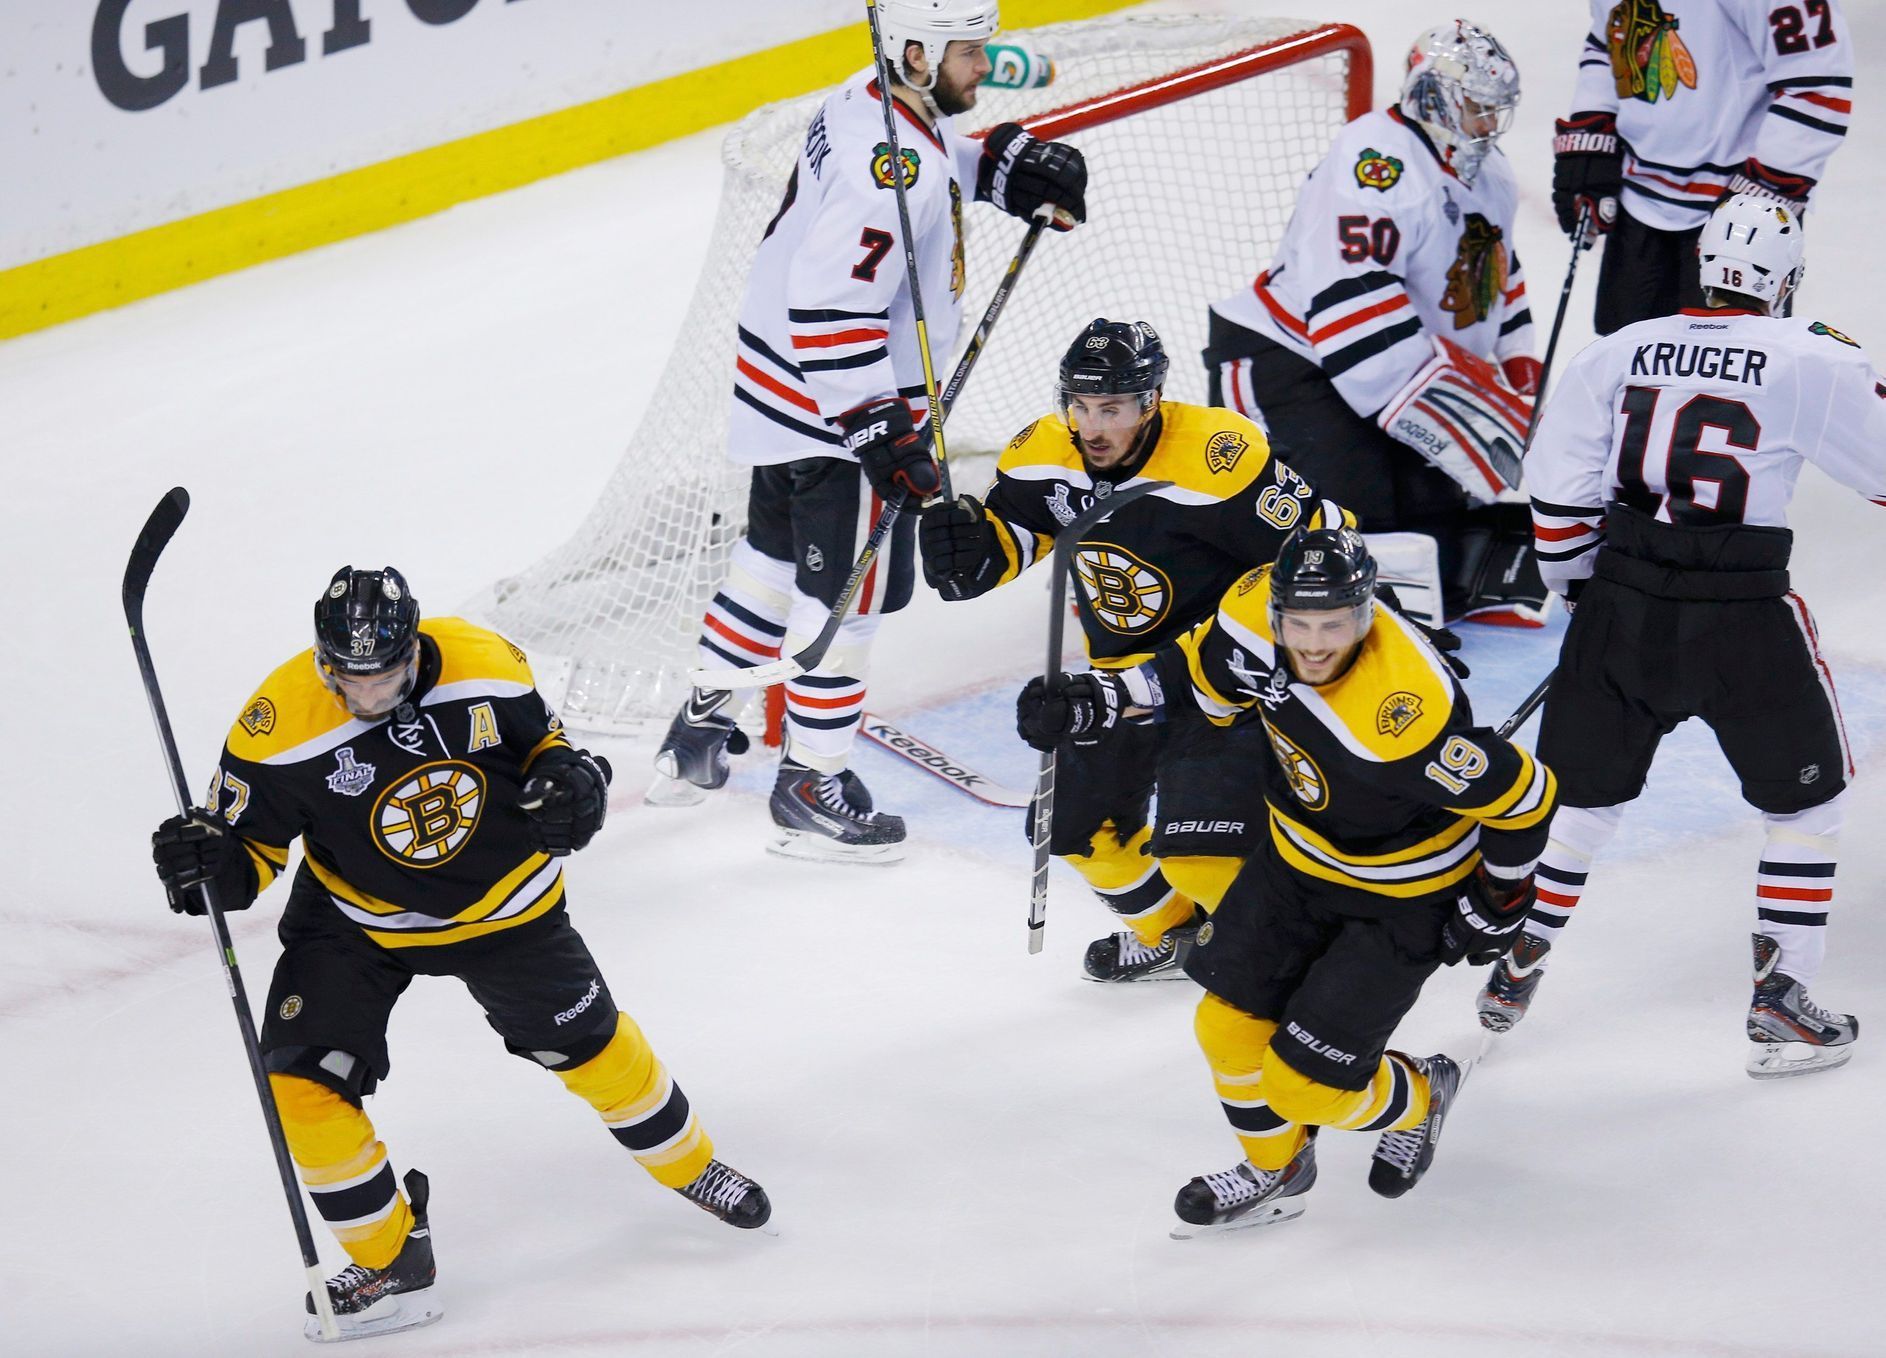 Čtvrtý zápas finále Stanley Cupu: Boston Bruinss - Chicago Blackhawks